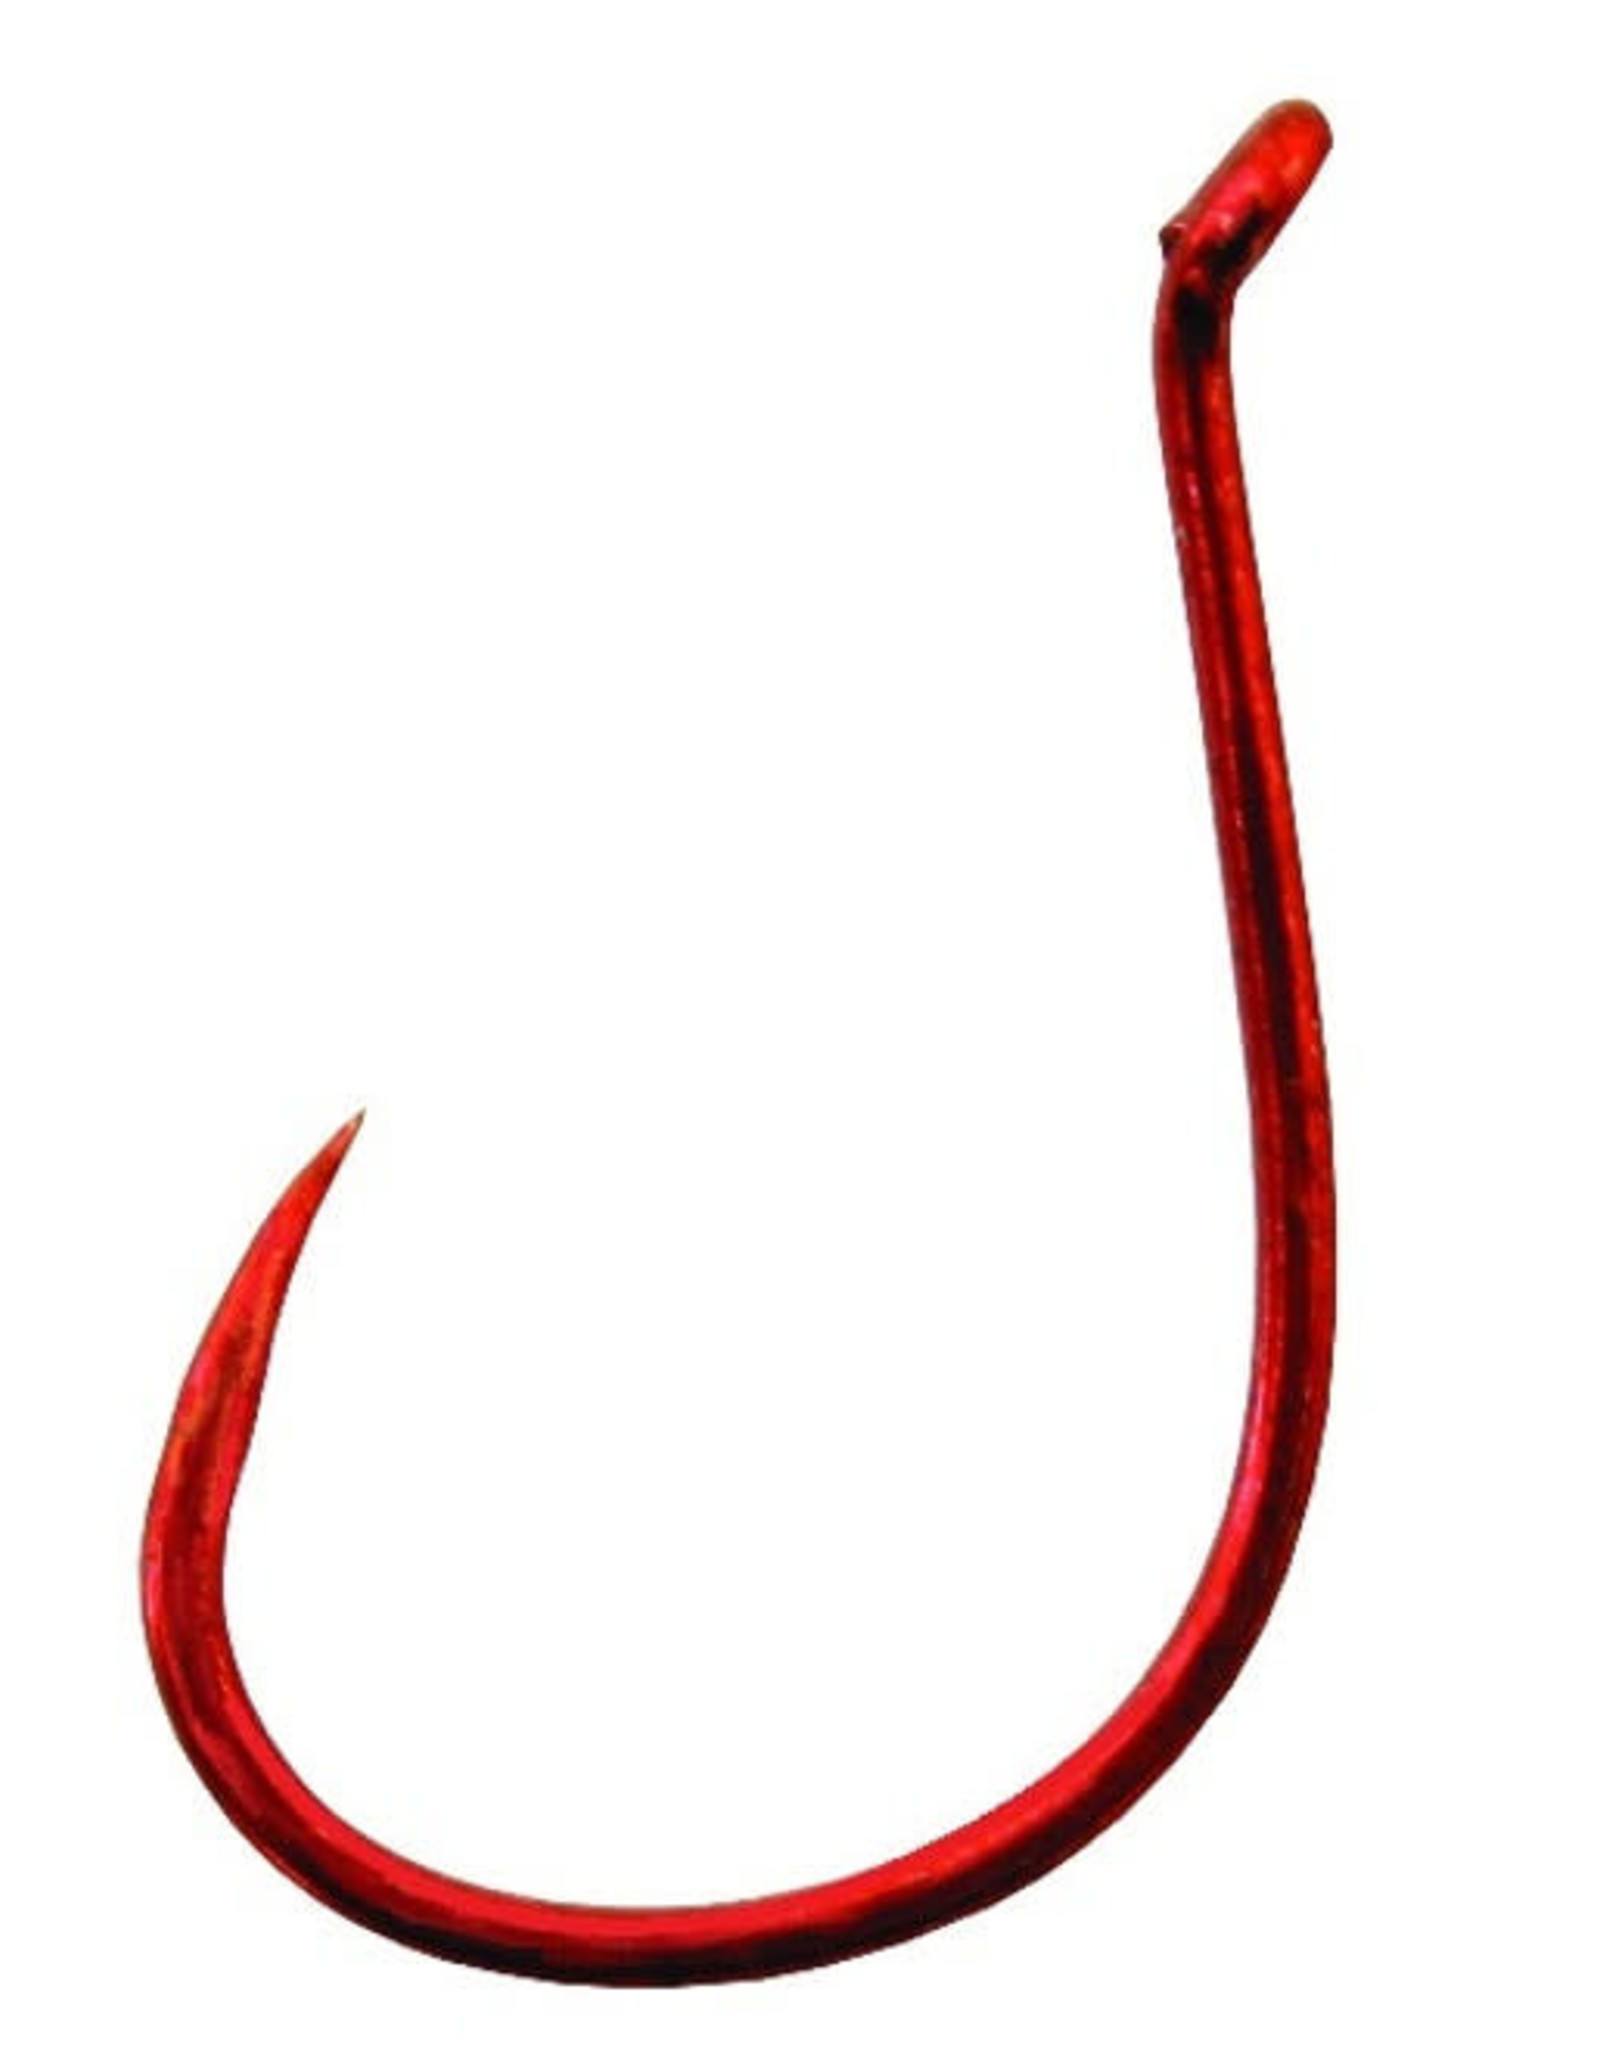 Gamakatsu Gamakatsu Octopus Hook - Barbless - Red - #3/0 - 6 Count